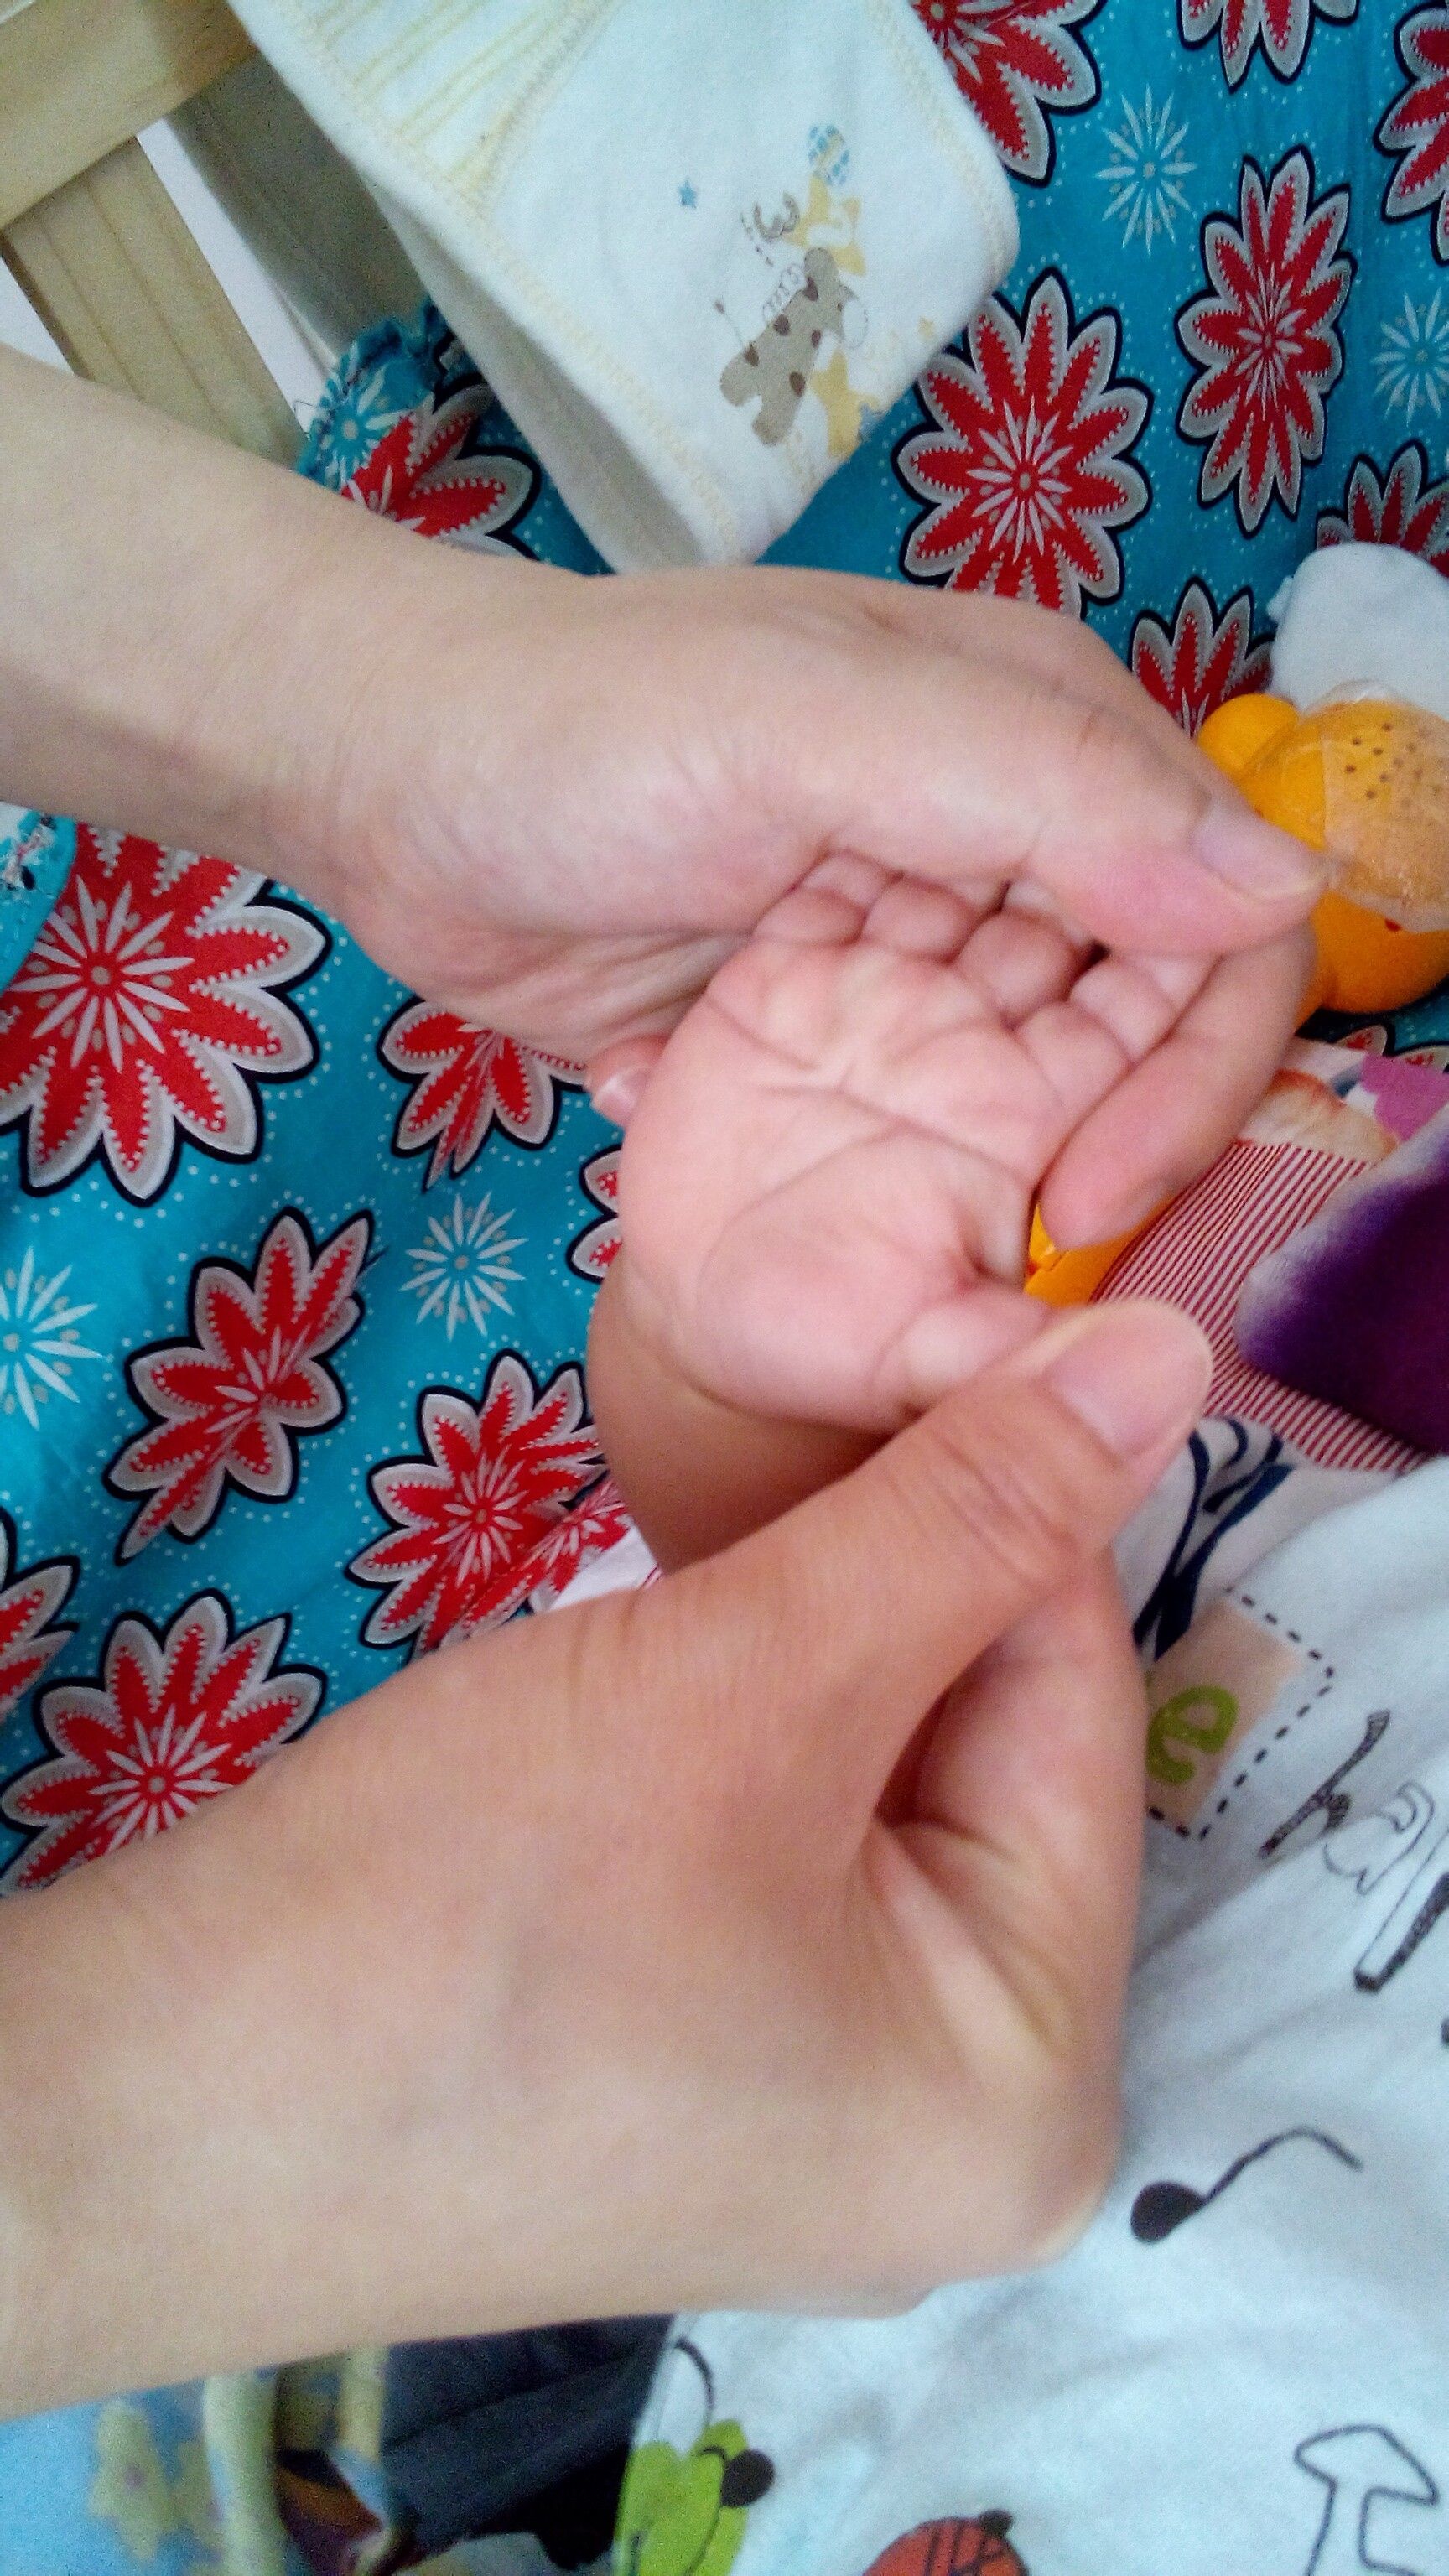 我们家宝宝左手有一横纹,是不是所谓的断掌?有什么说法吗?有什么利弊?